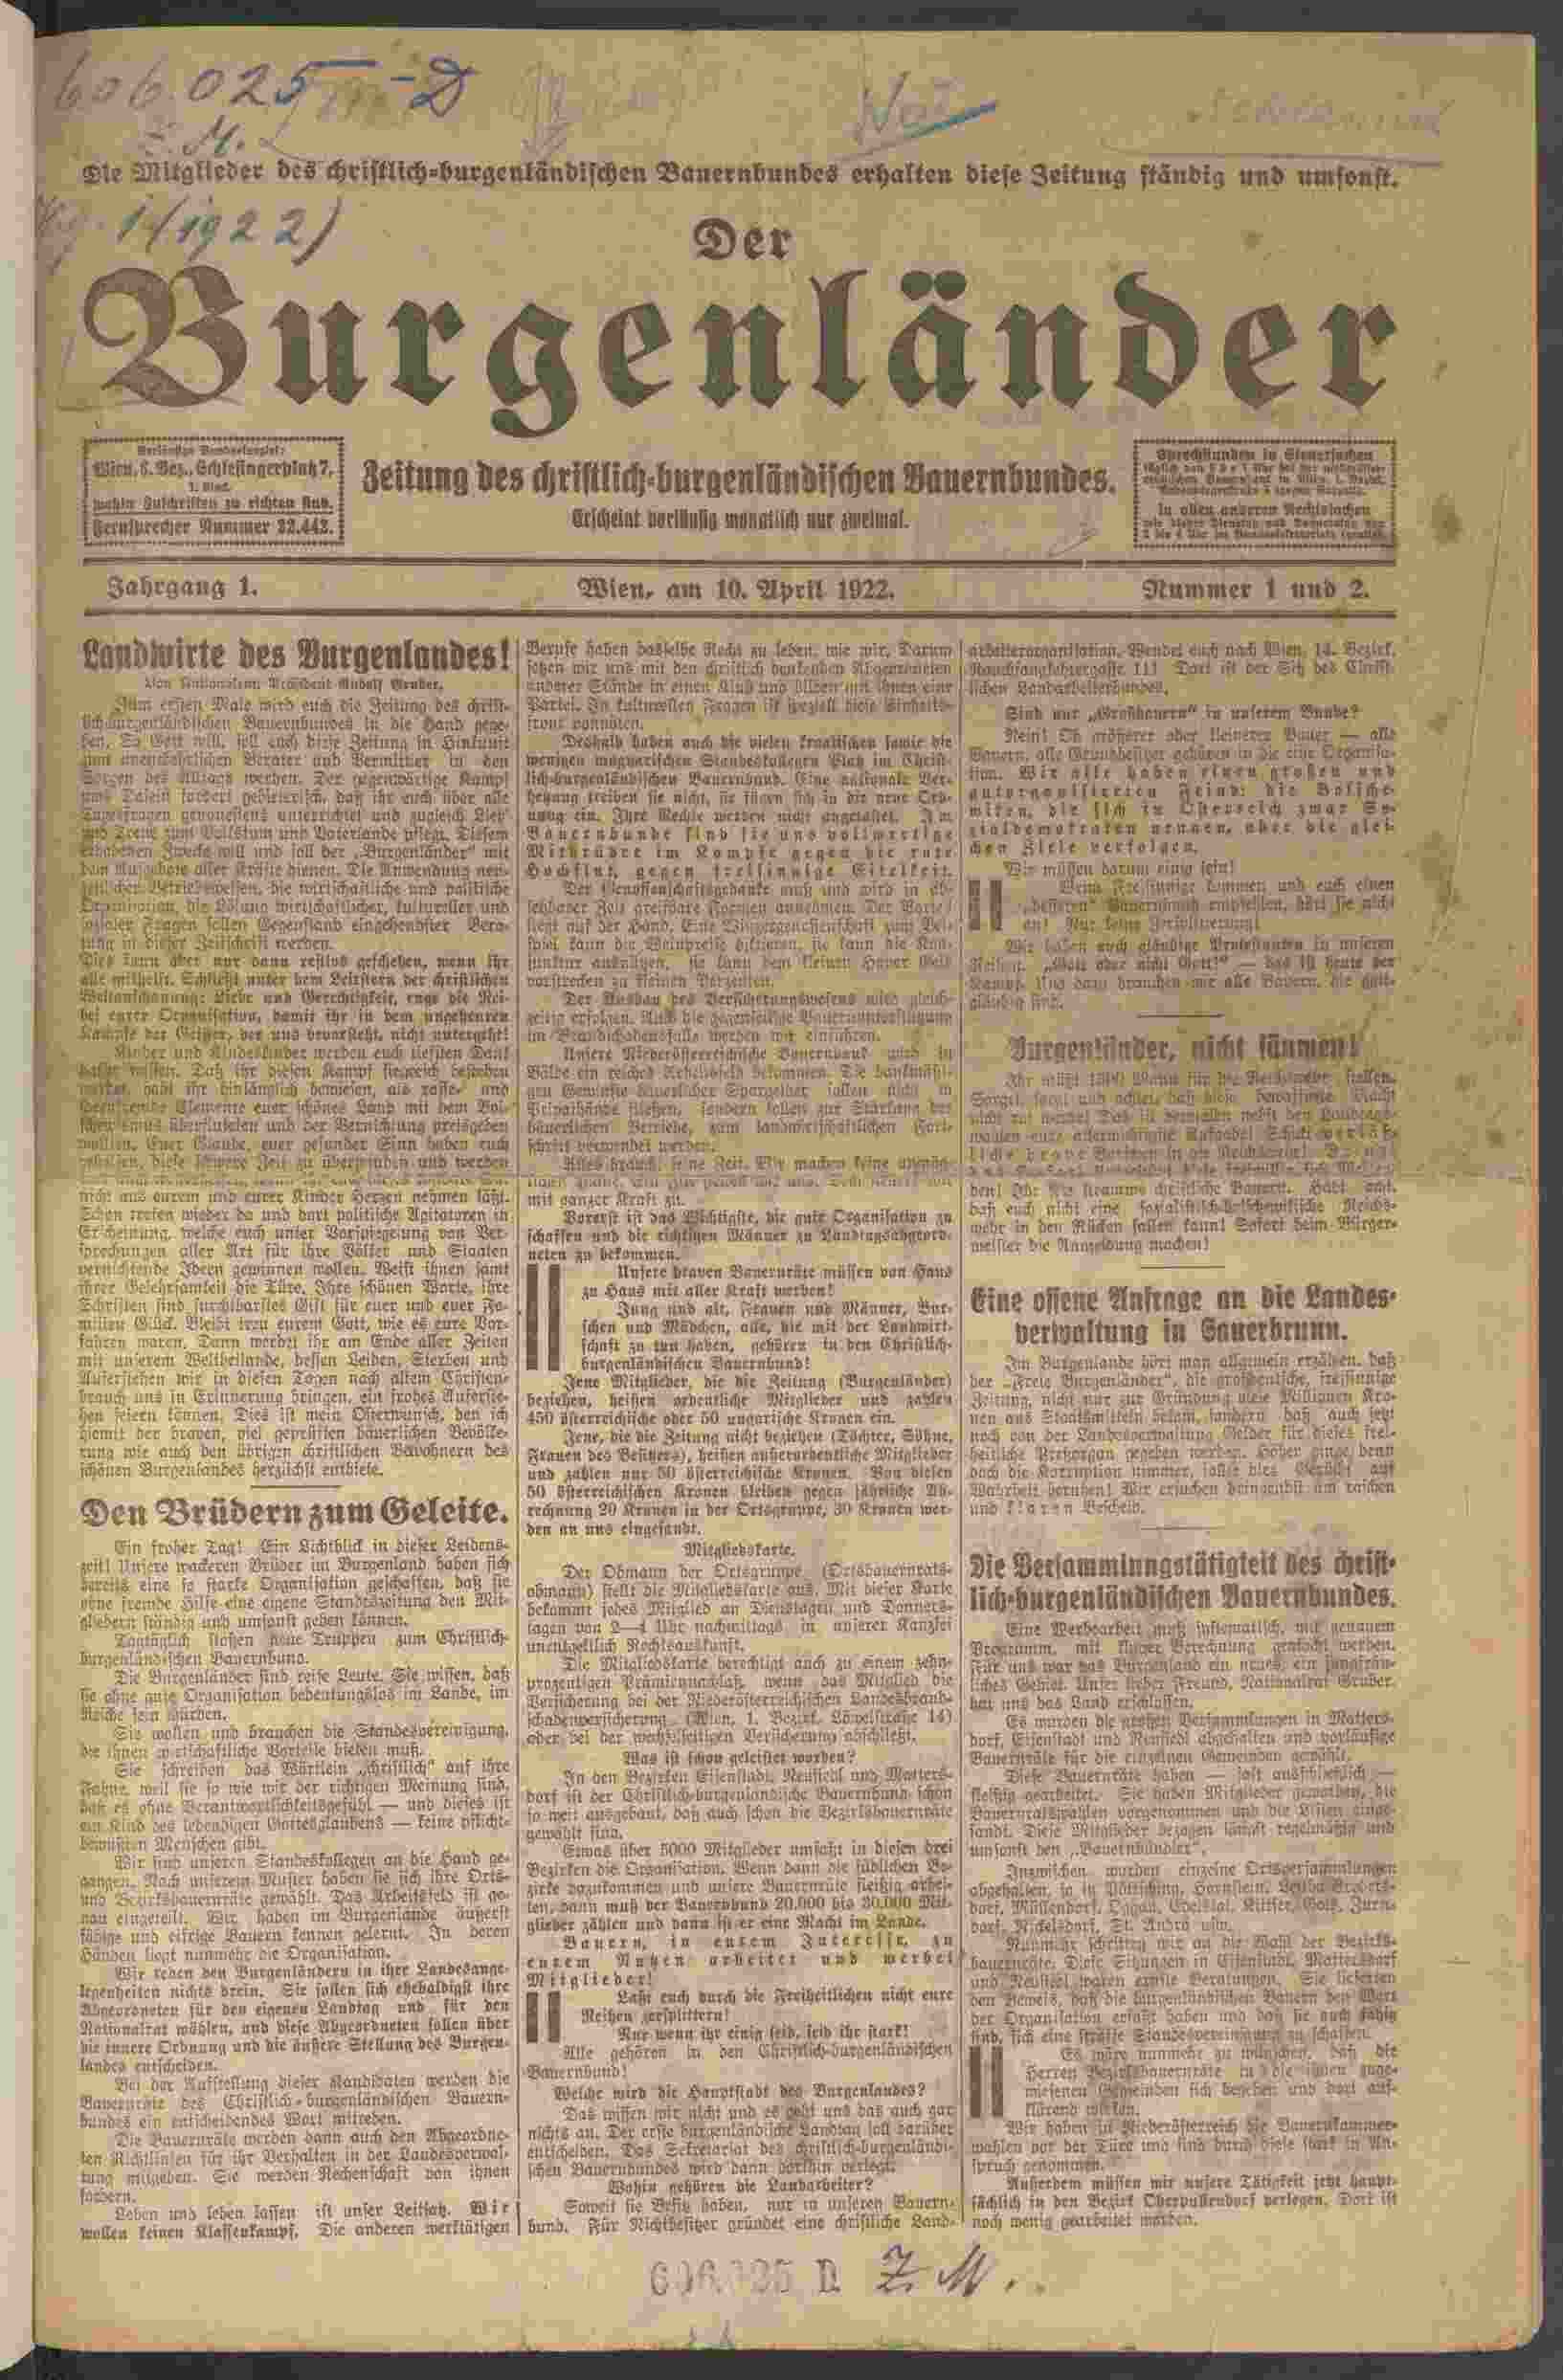 Der Burgenländer, 10.4.1922, Titelblatt, ANNO/ÖNB